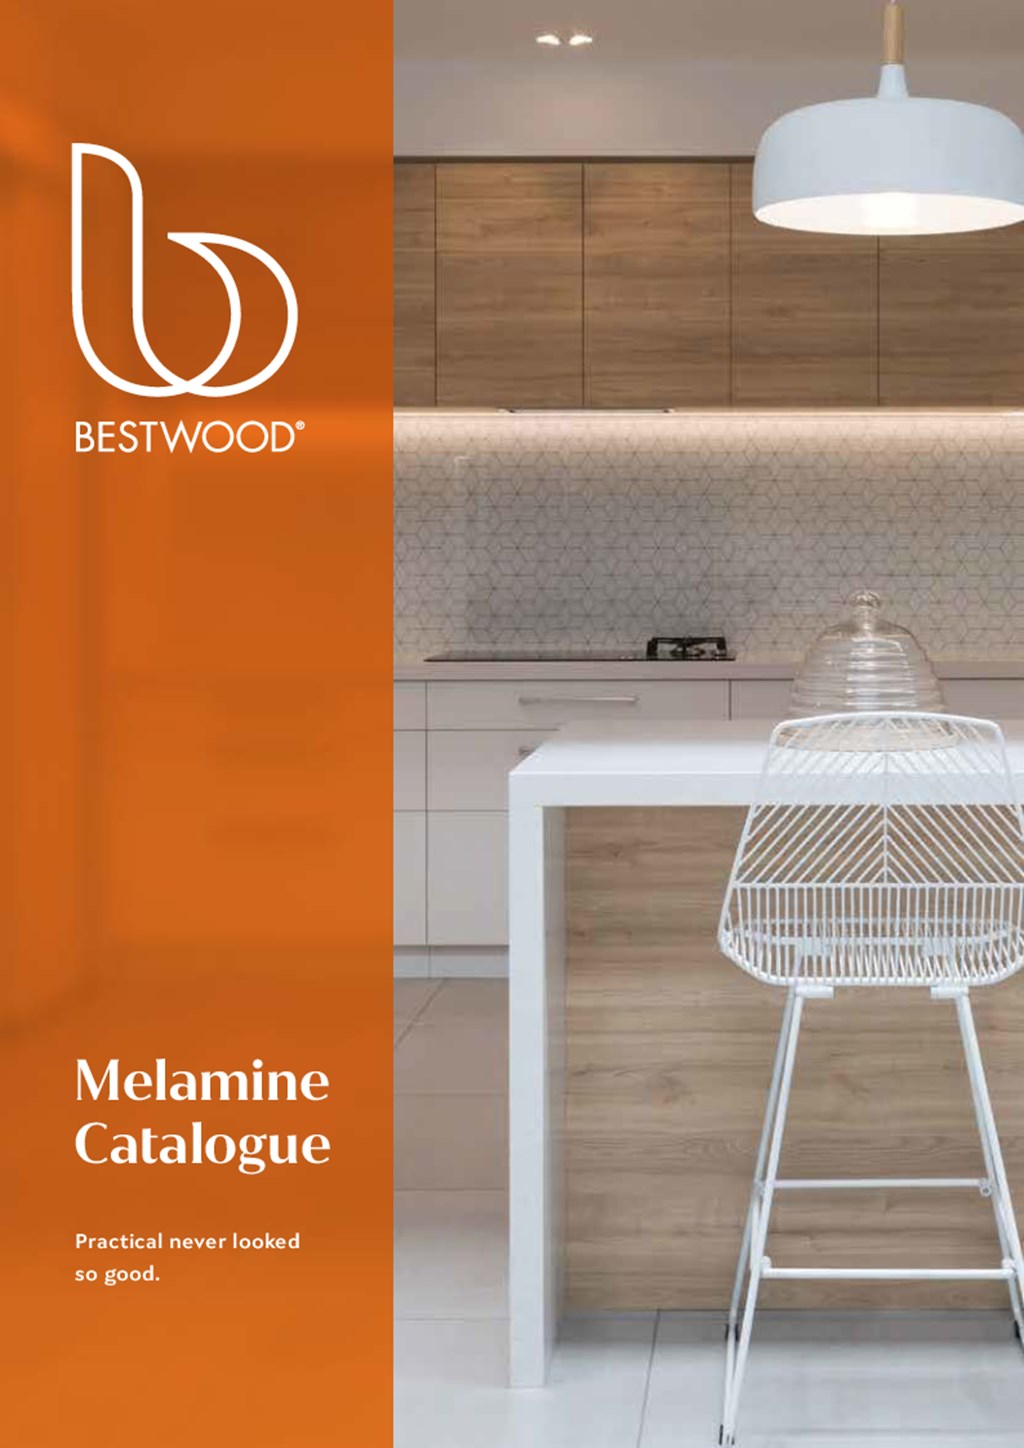 Bestwood Melamine Catalogue